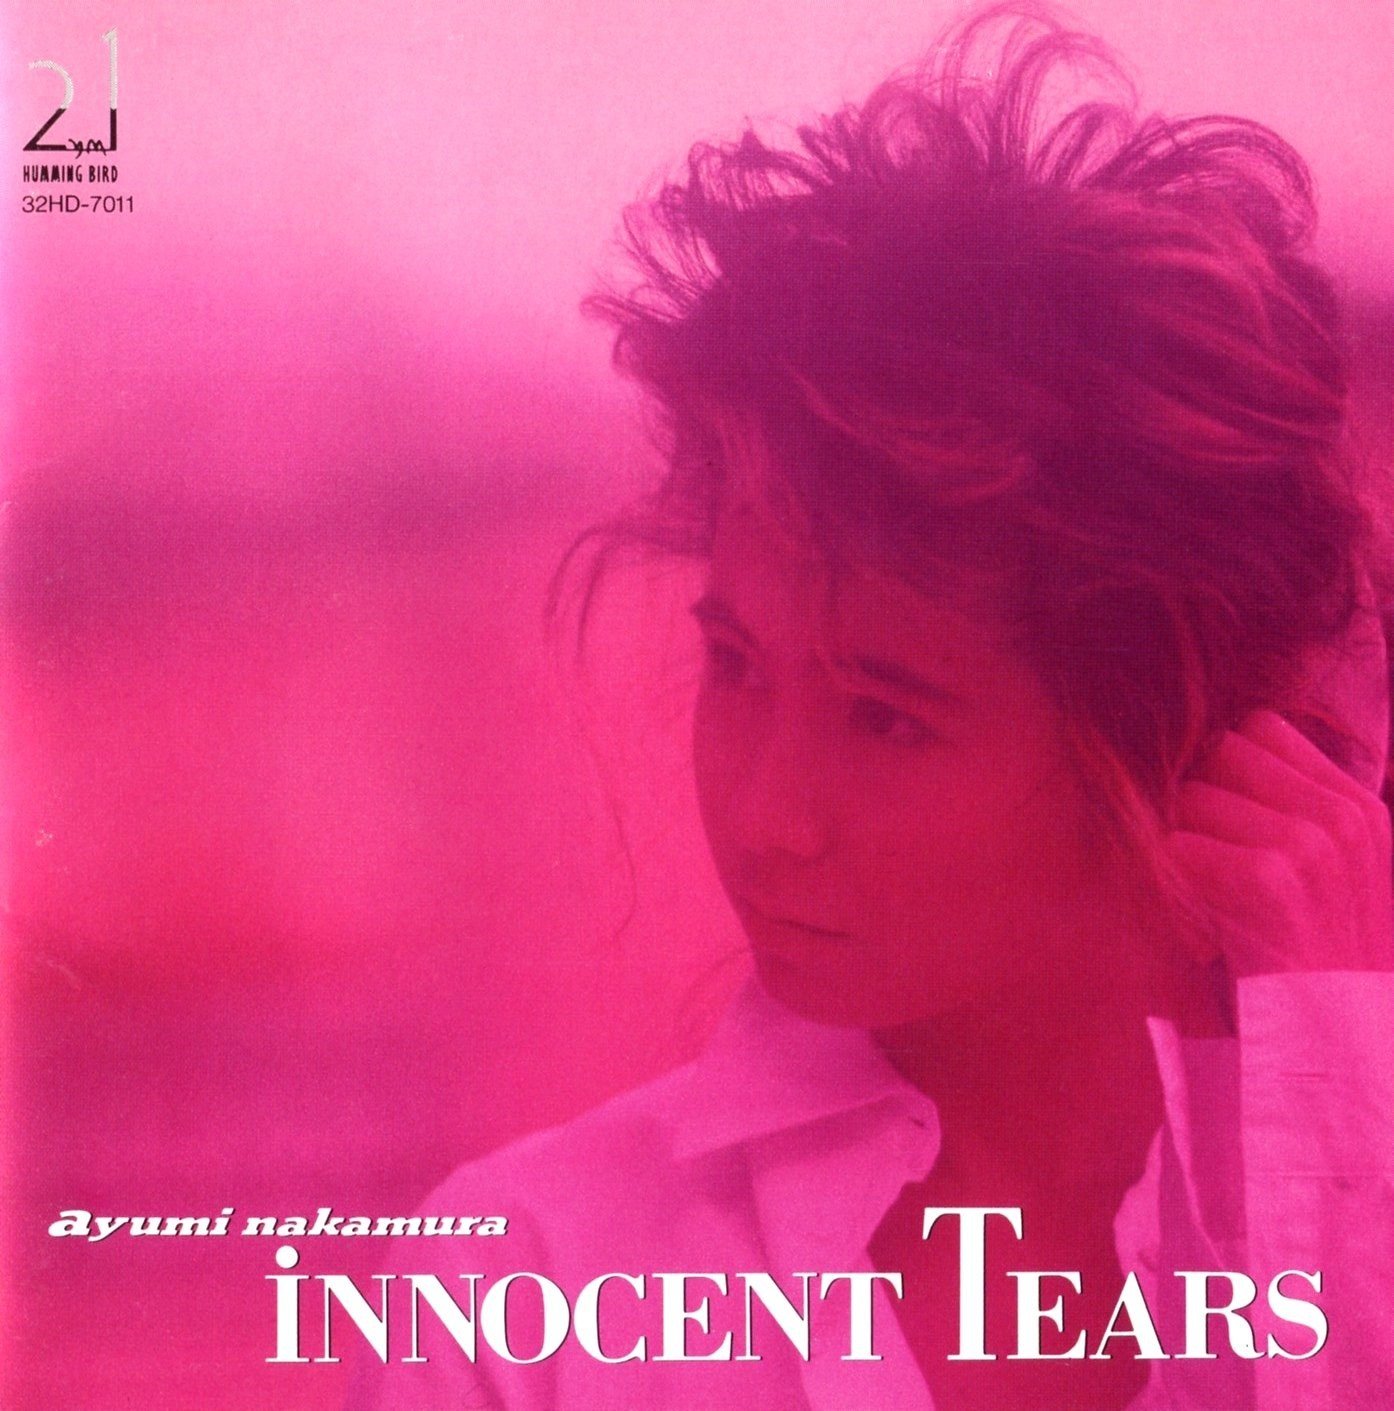 中村あゆみ (Ayumi Nakamura) – INNOCENT TEARS (35周年記念 2019 Remaster) [FLAC 24bit/48kHz]